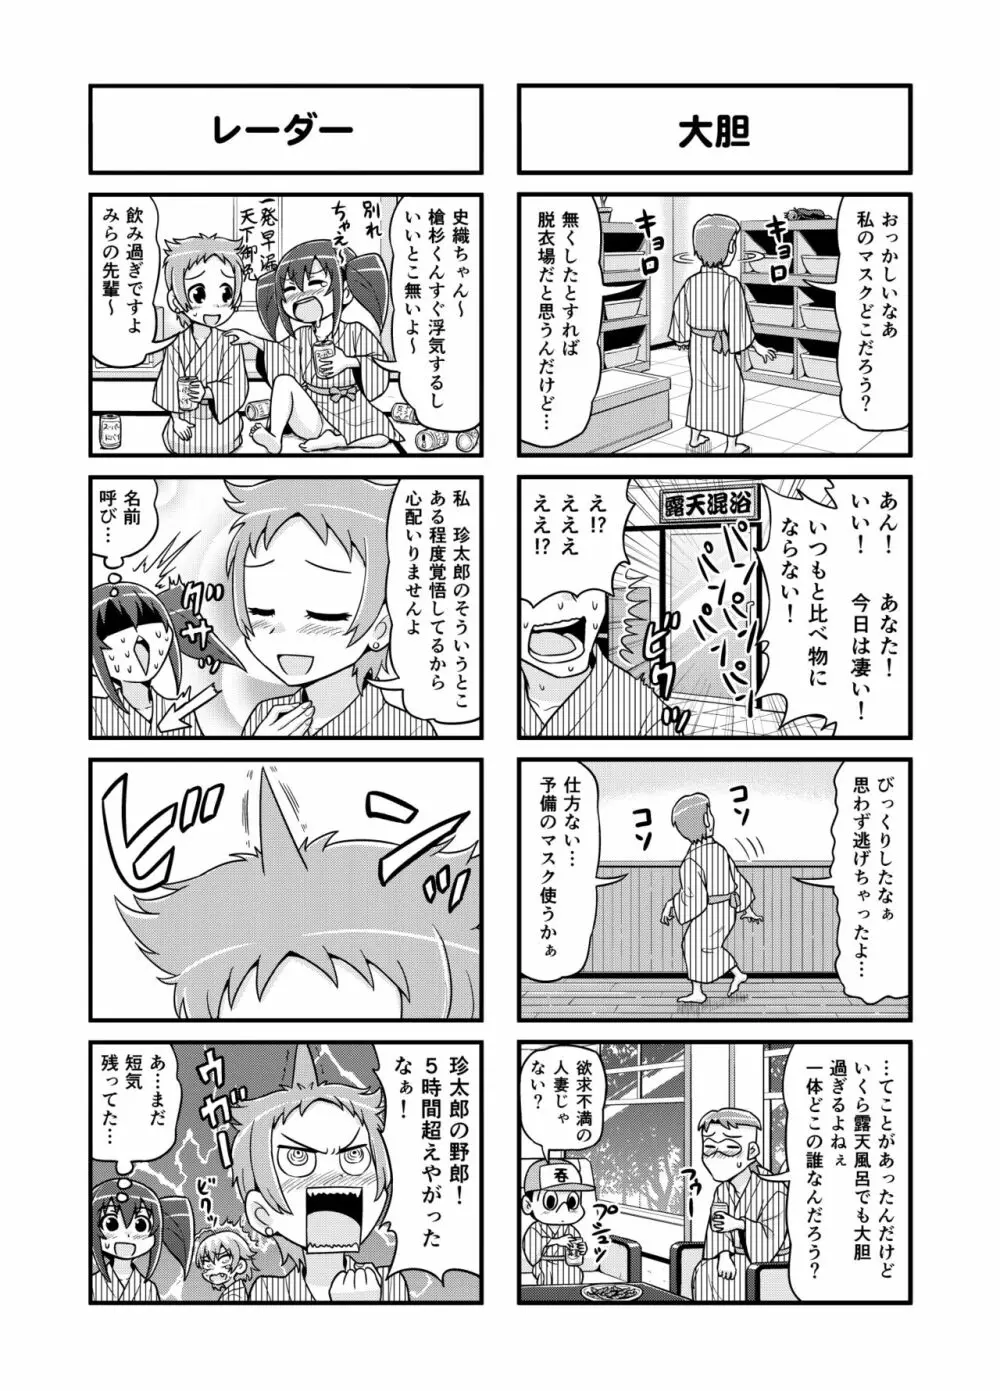 のんきBOY 1-48 - page136